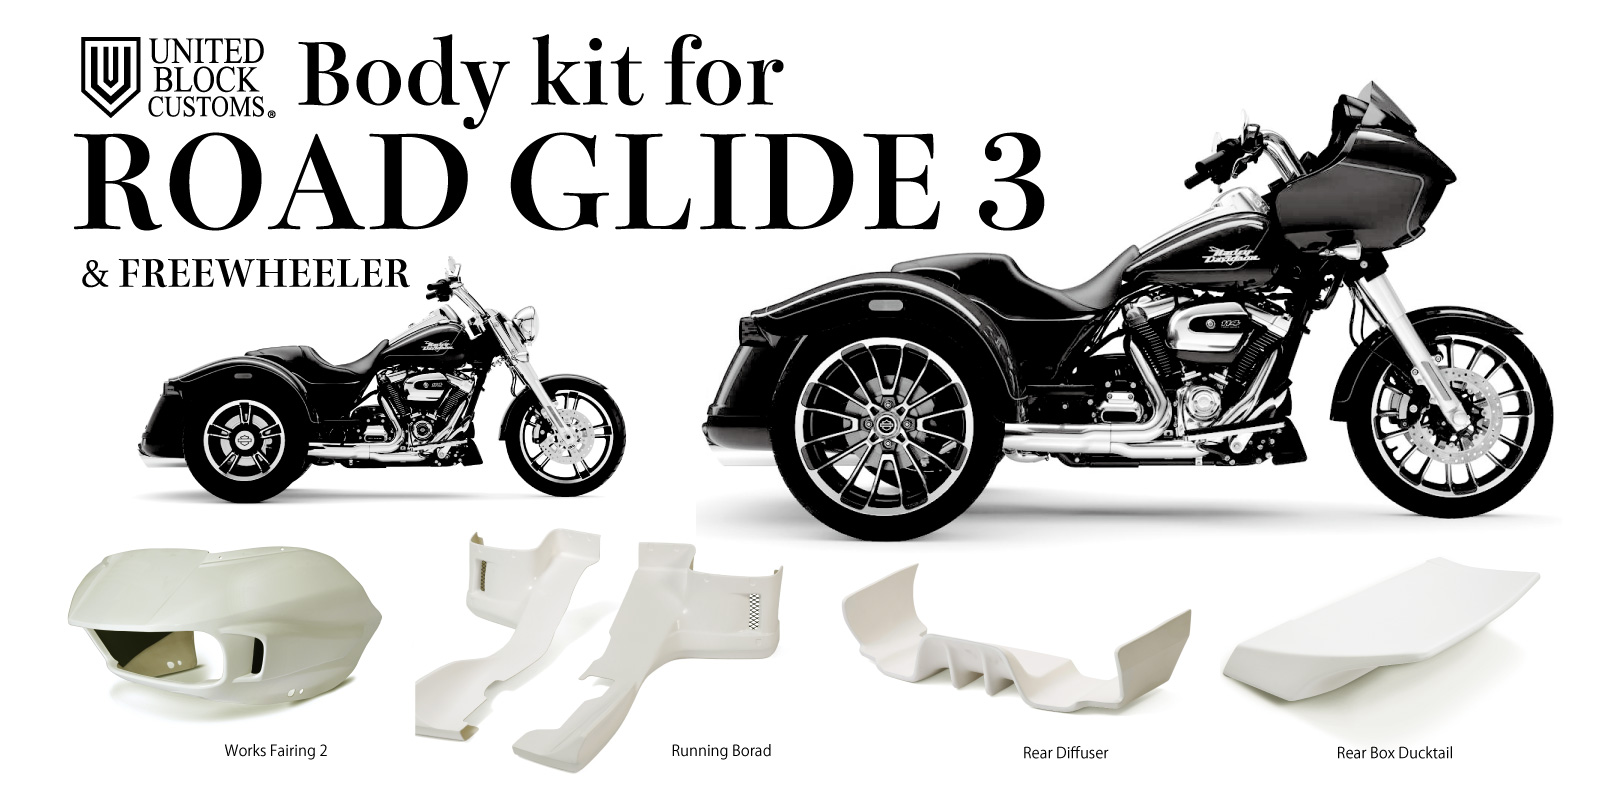 Body kit for ROAD GLIDE 3 & FREE WHEELER